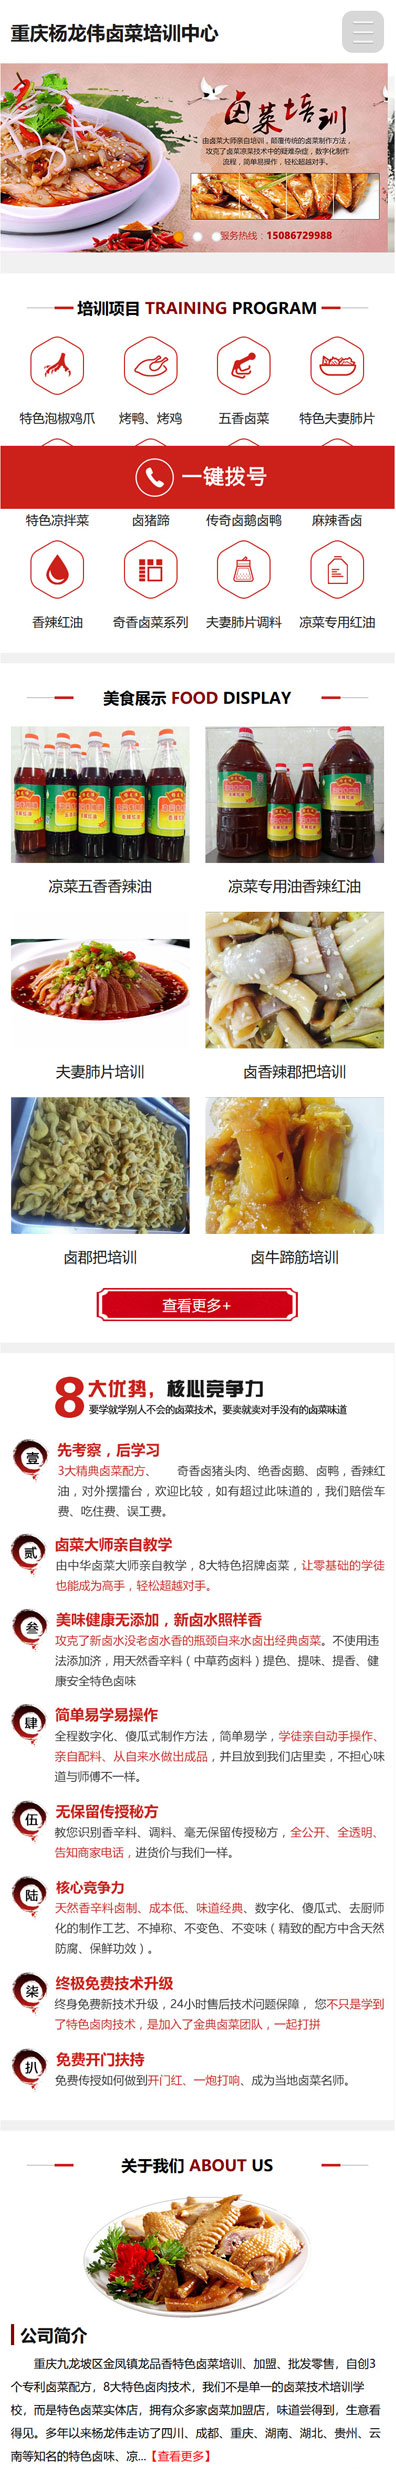 杨龙伟专业卤菜培训网站建设案例